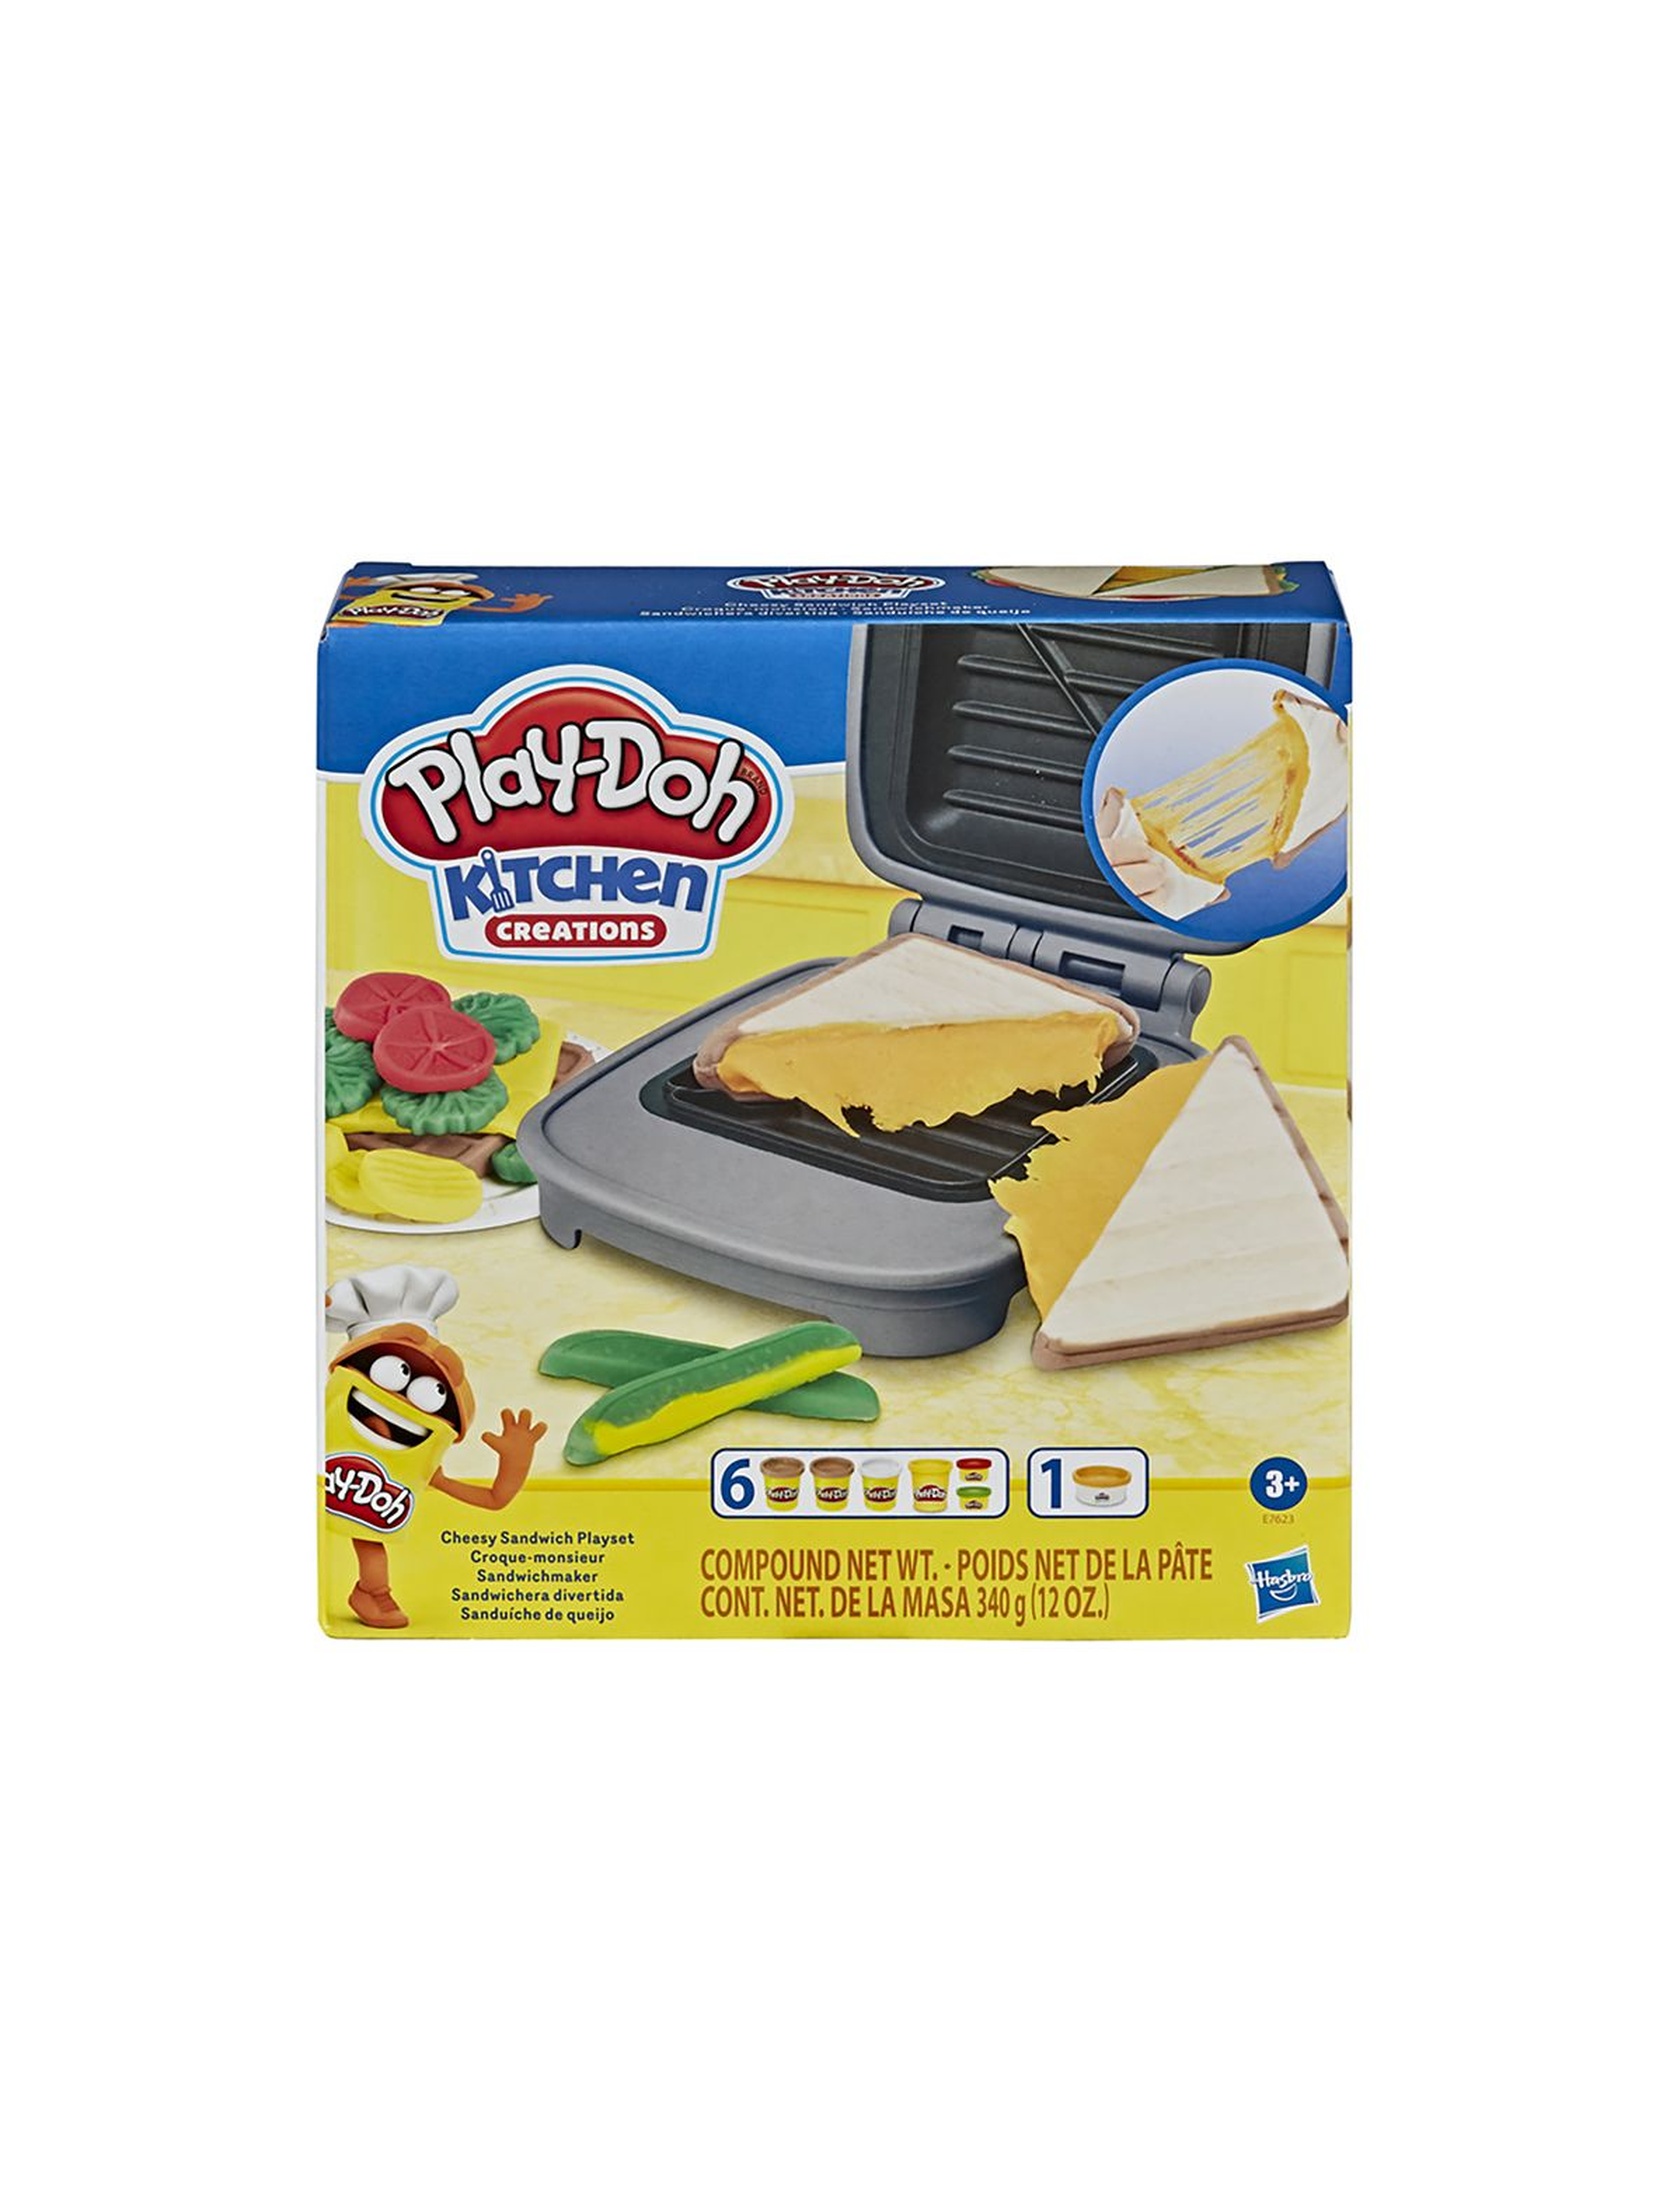 Play-doh tosty z ciągnącym serem wiek 3+